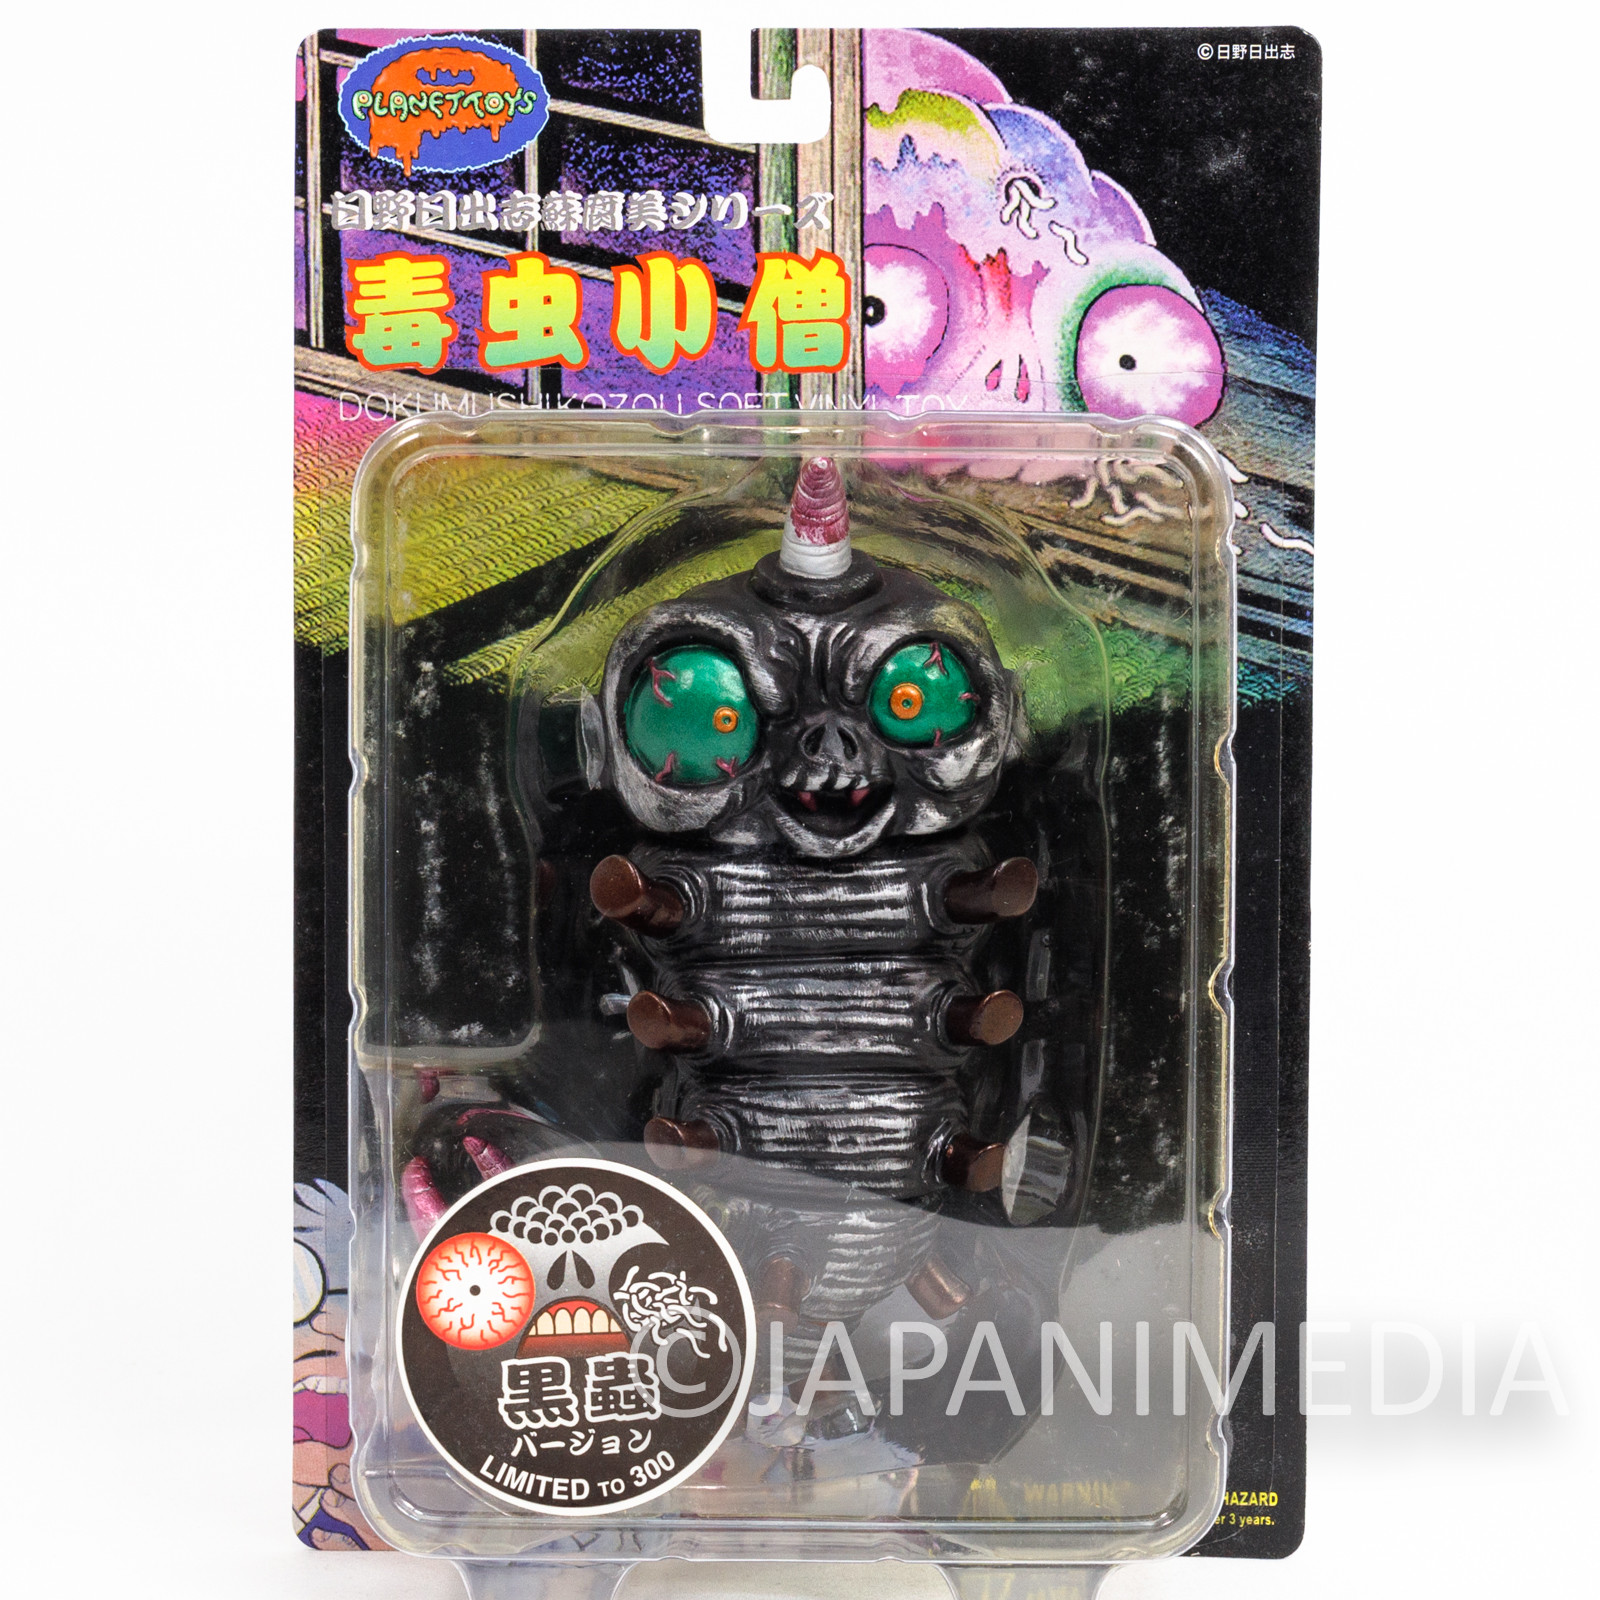 RARE! Dokumushi Kozou Soft Vinyl Figure Hideshi Hino Planet Toys JAPAN MANGA 3